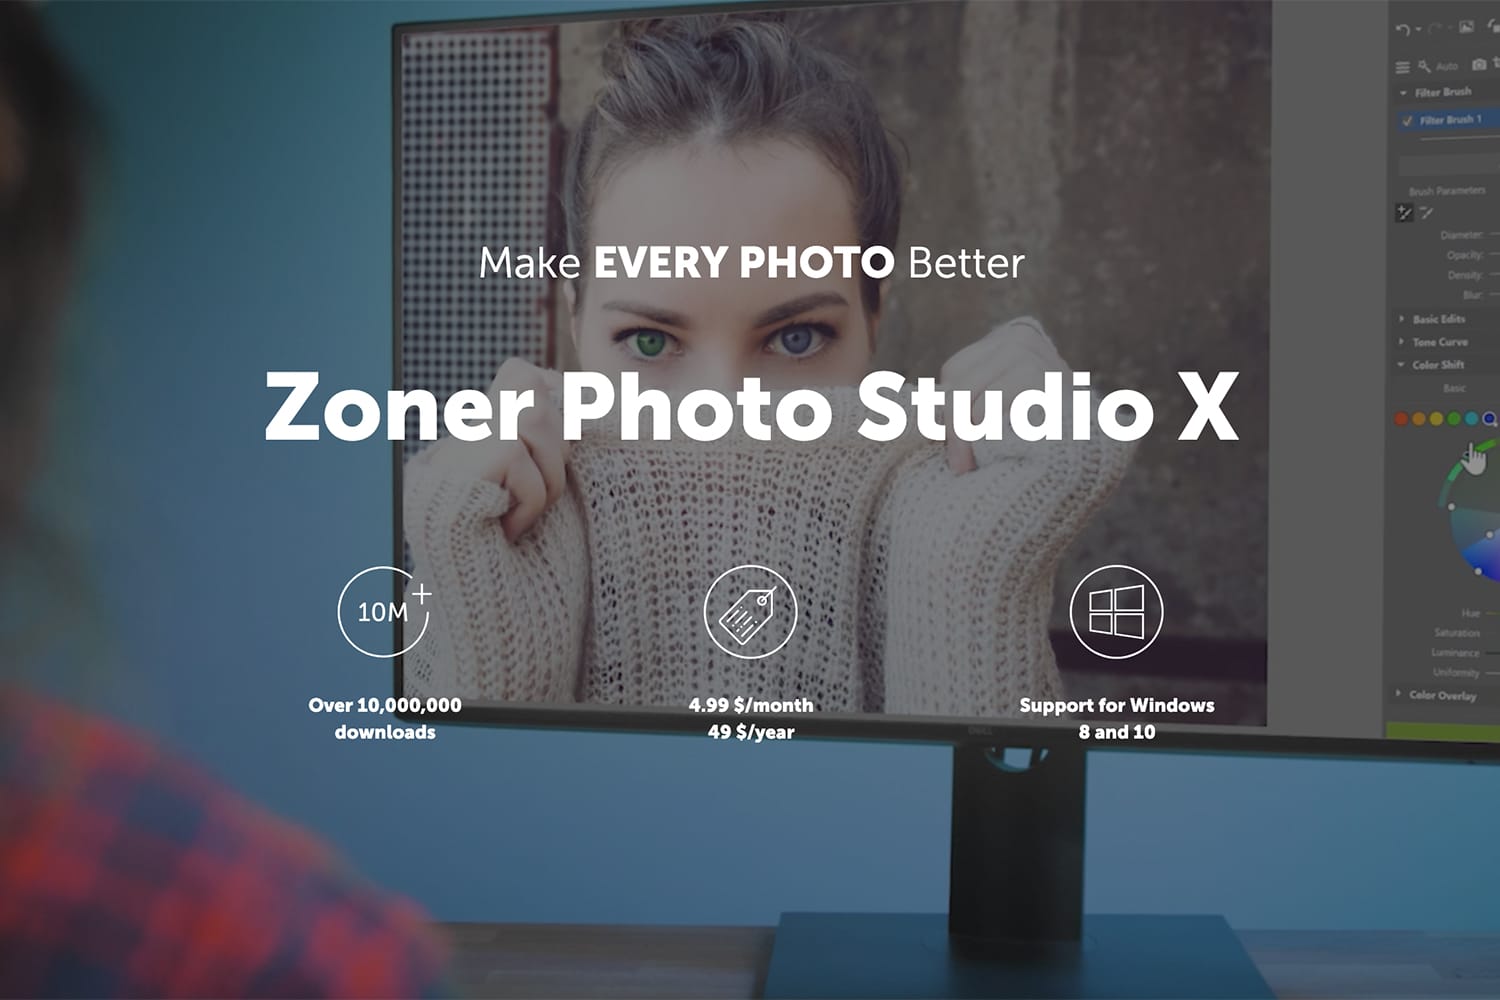 how to change language in zoner photo studio x